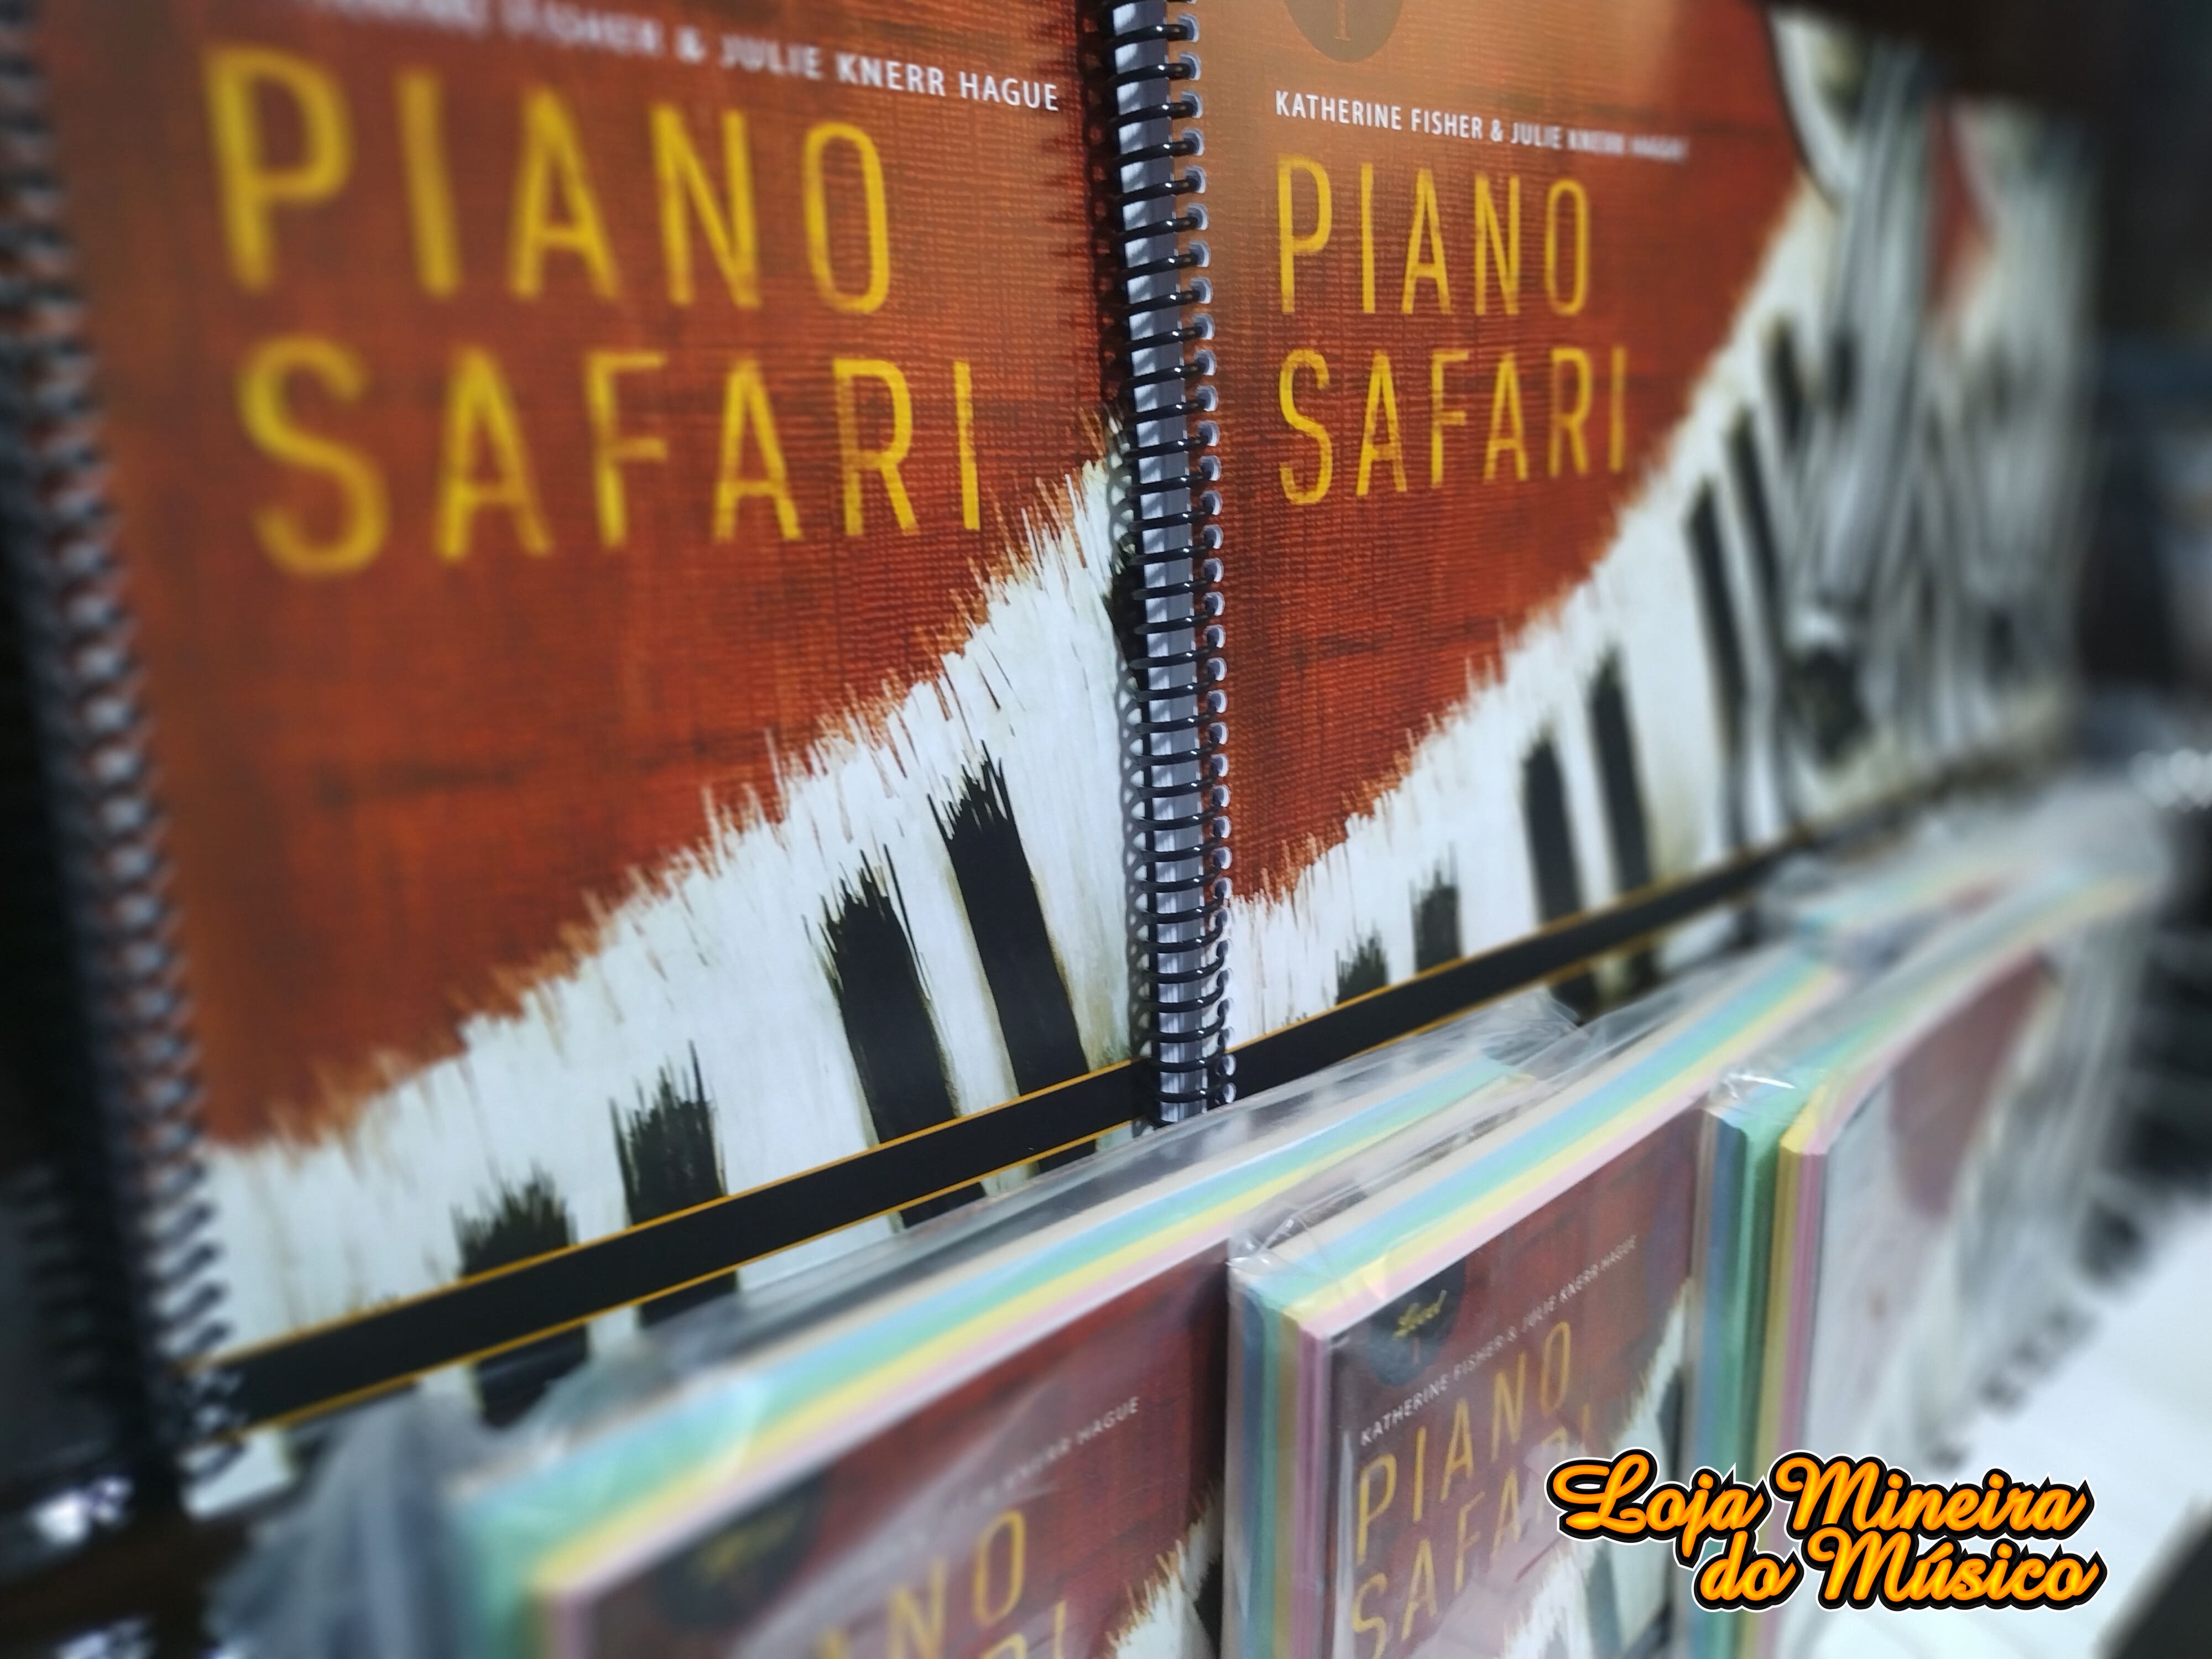 PIANO SAFARI REPERTOIRE BOOK 1 na Loja Mineira do Musico